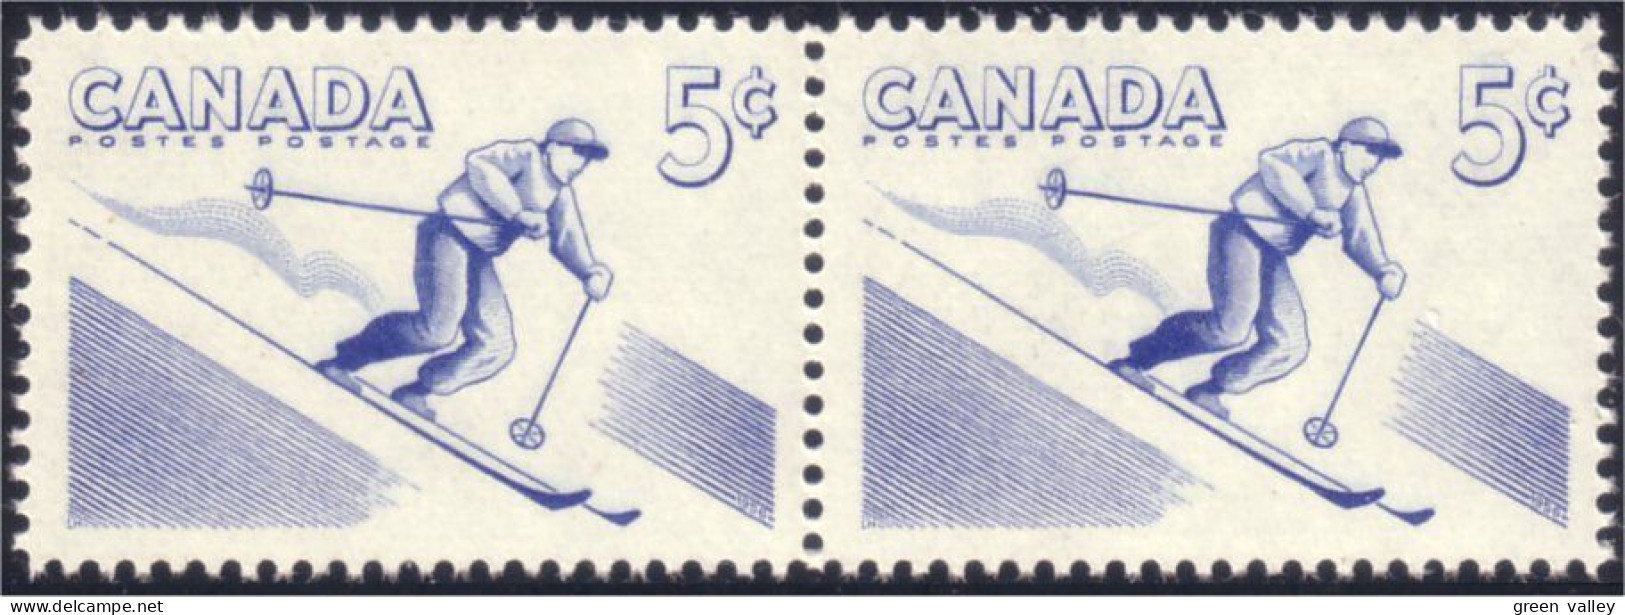 Canada Paire Identique Ski Identical Pair MNH ** Neuf SC (03-68ib) - Hiver